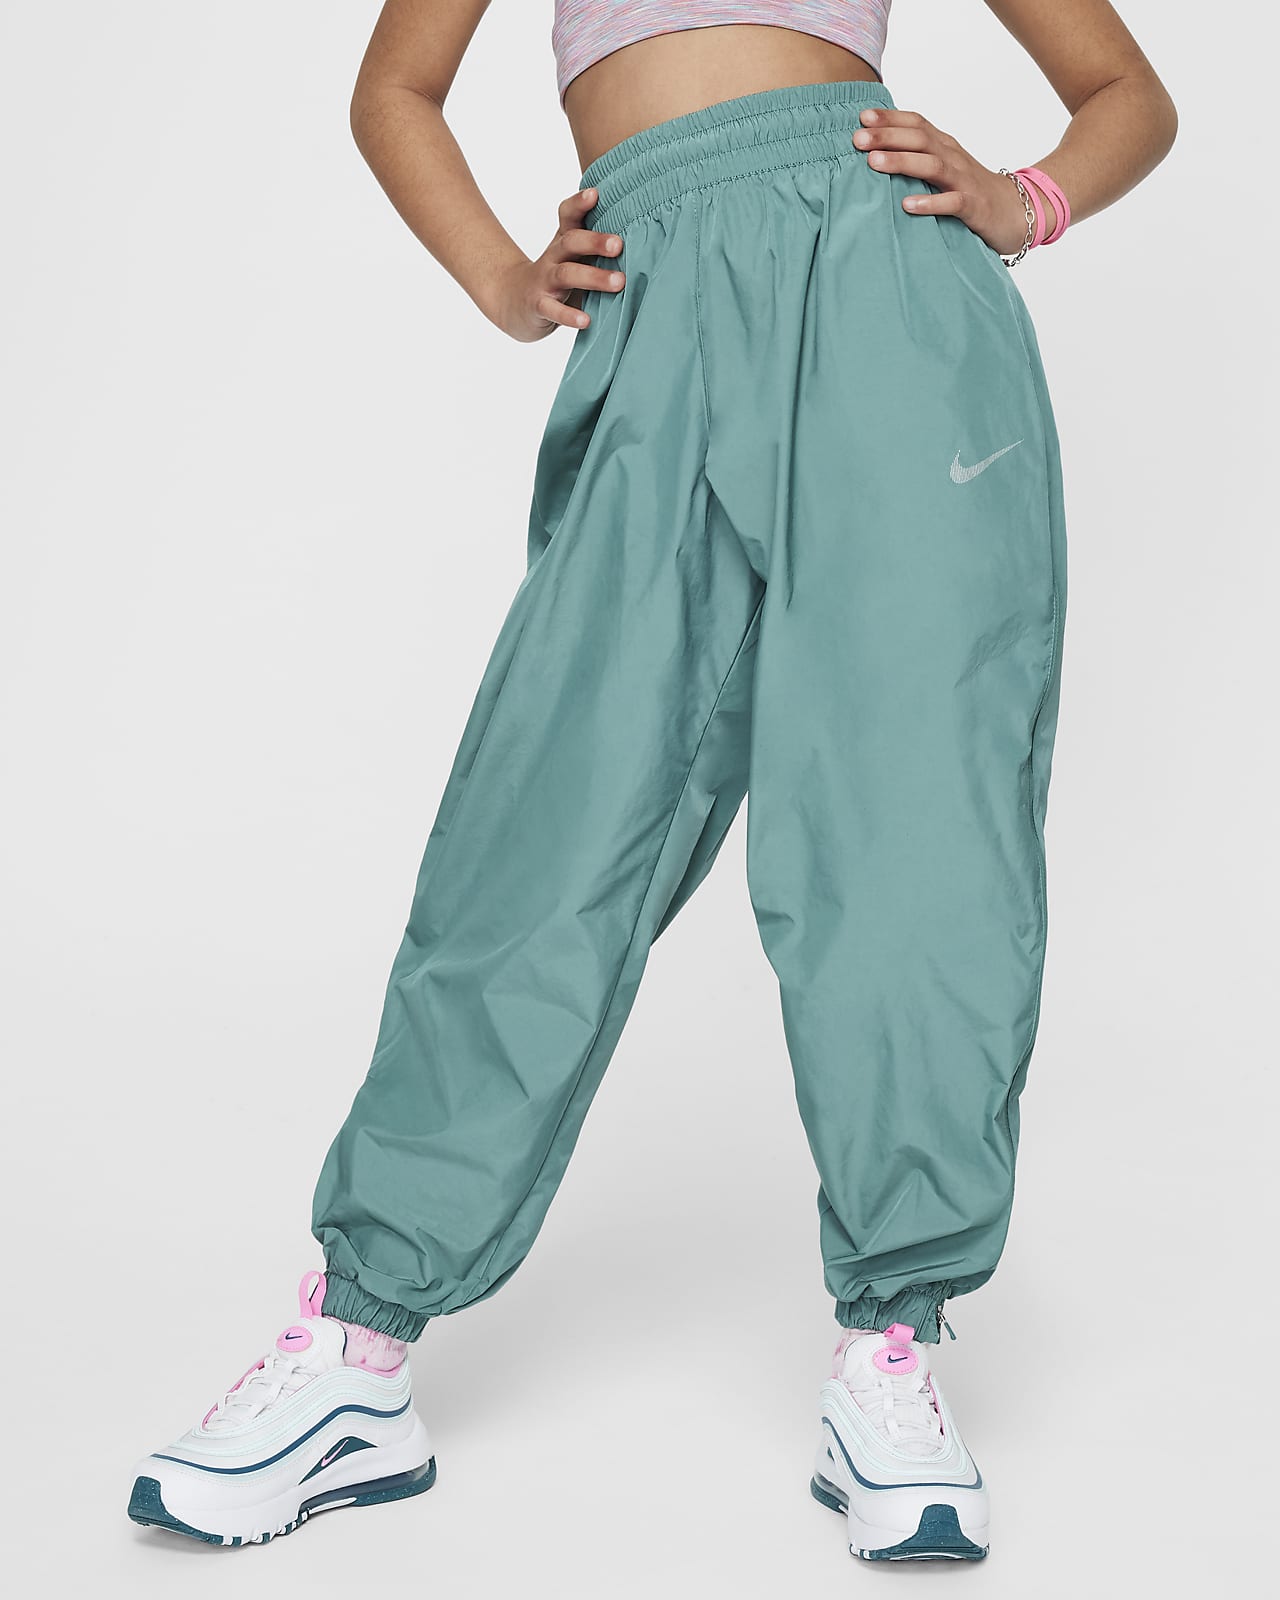 Pantalon tissé Nike Sportswear pour ado (fille)